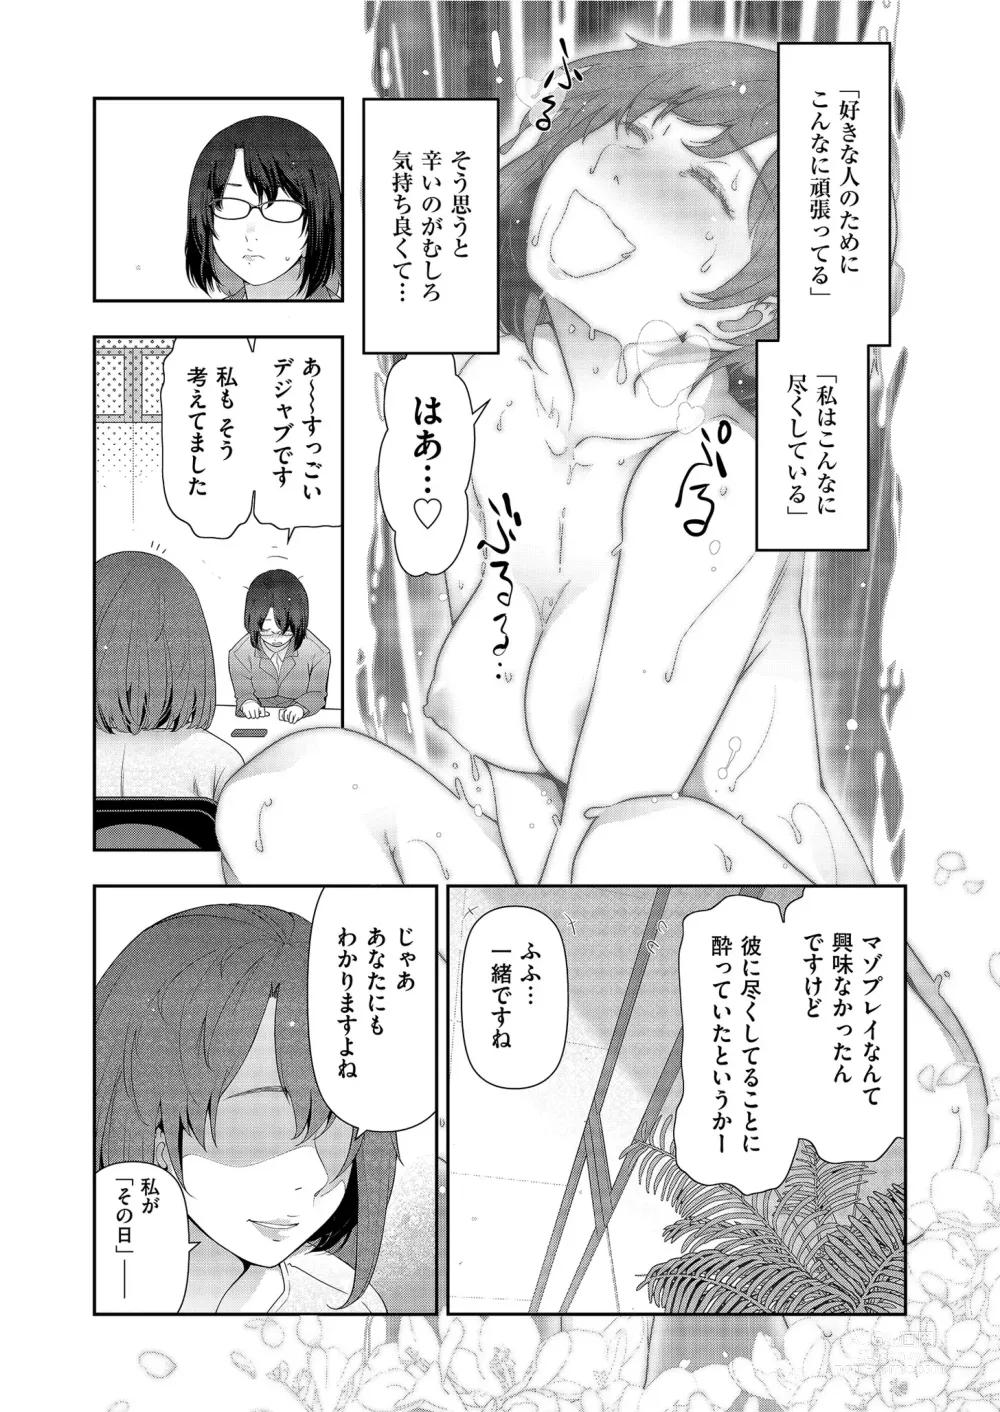 Page 155 of manga Yonimo Kanbi na Toshi Densetsu BF